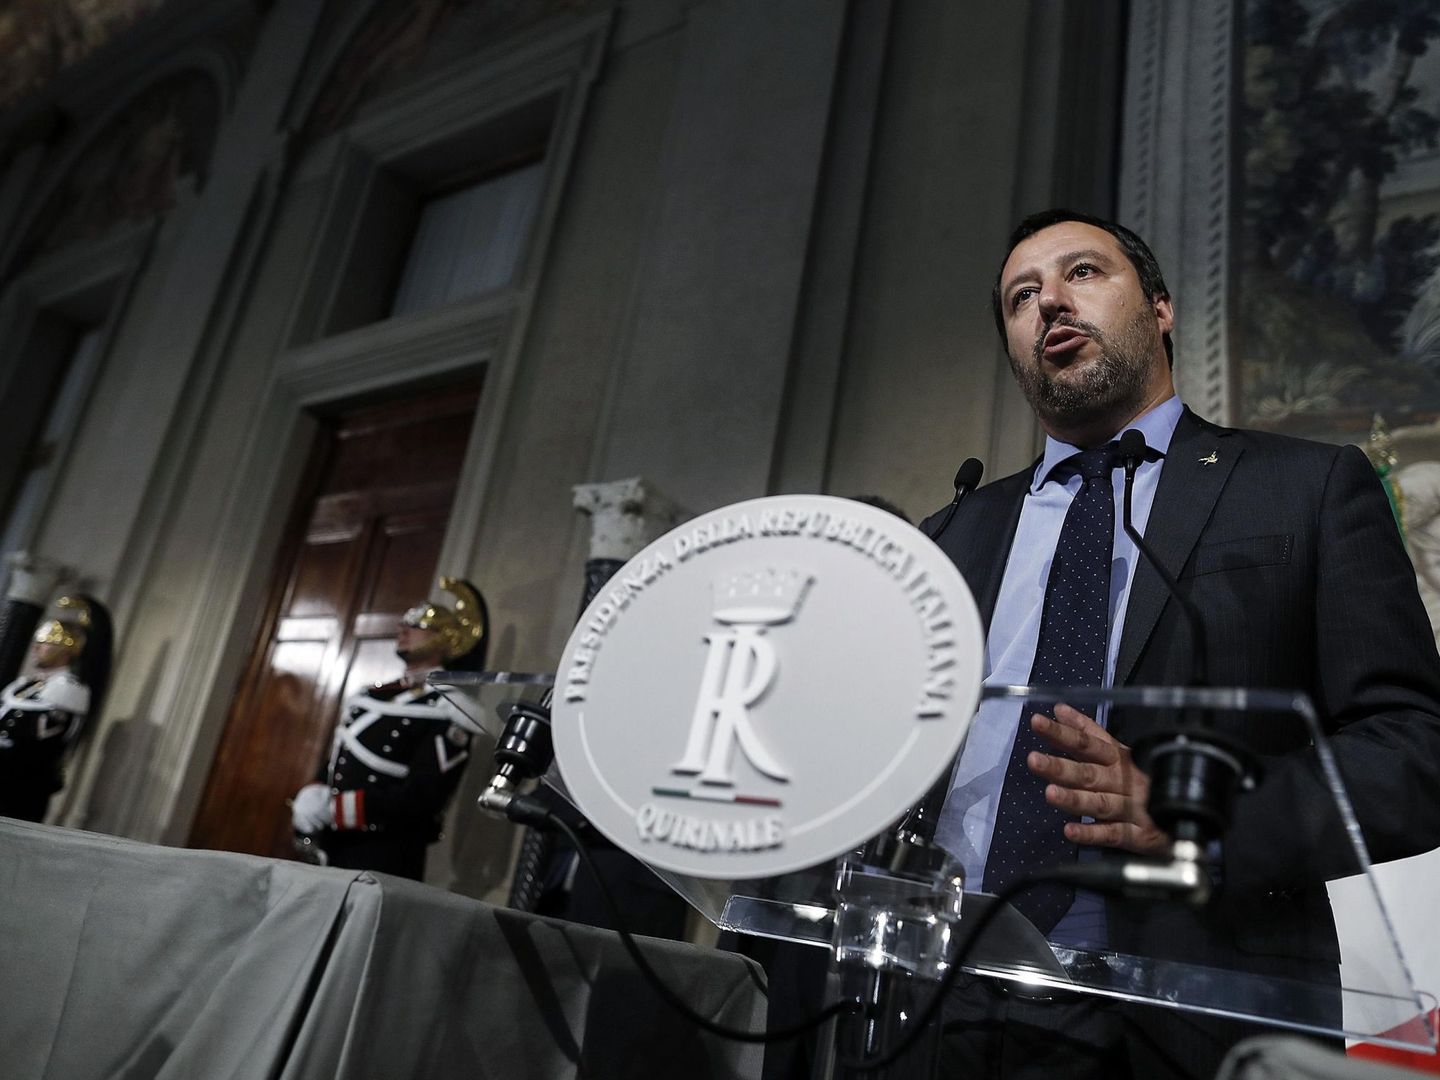 El líder de la Liga Norte, Matteo Salvini, habla durante una rueda de prensa tras su reunión con el presidente italiano, Sergio Mattarella. (EFE)